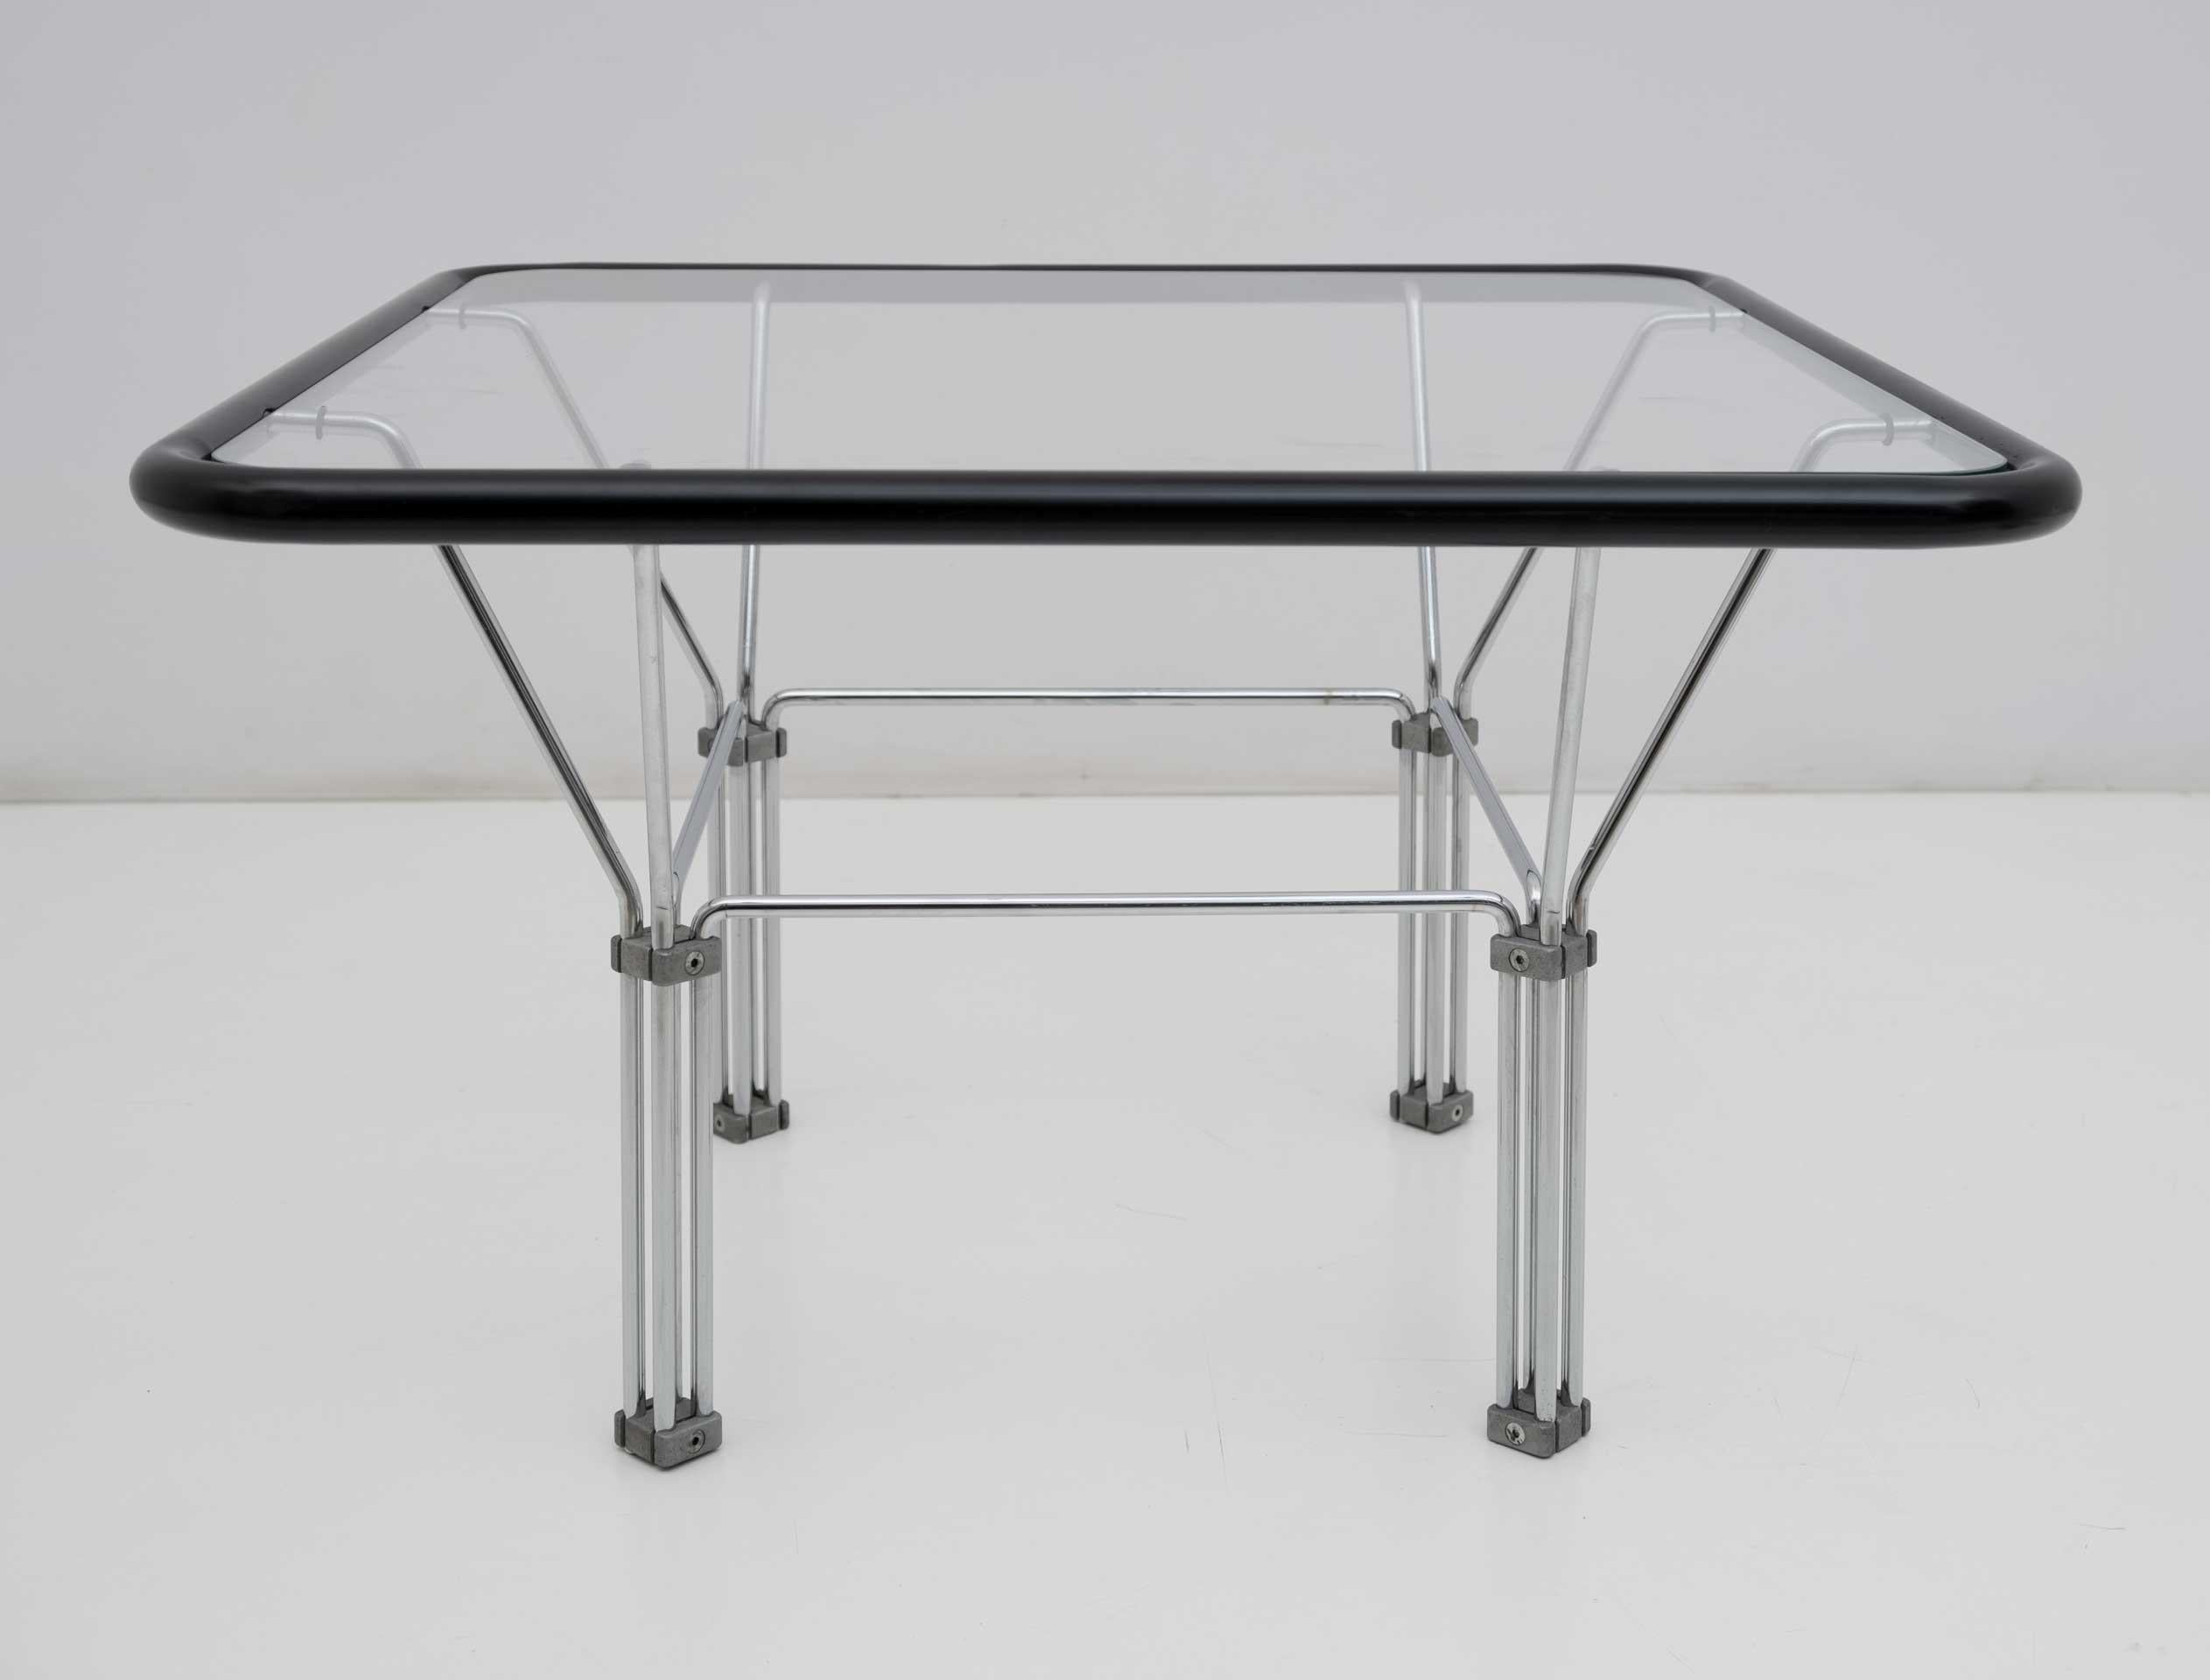 Cette table basse est attribuée au designer danois Niels Bendtsen pour 